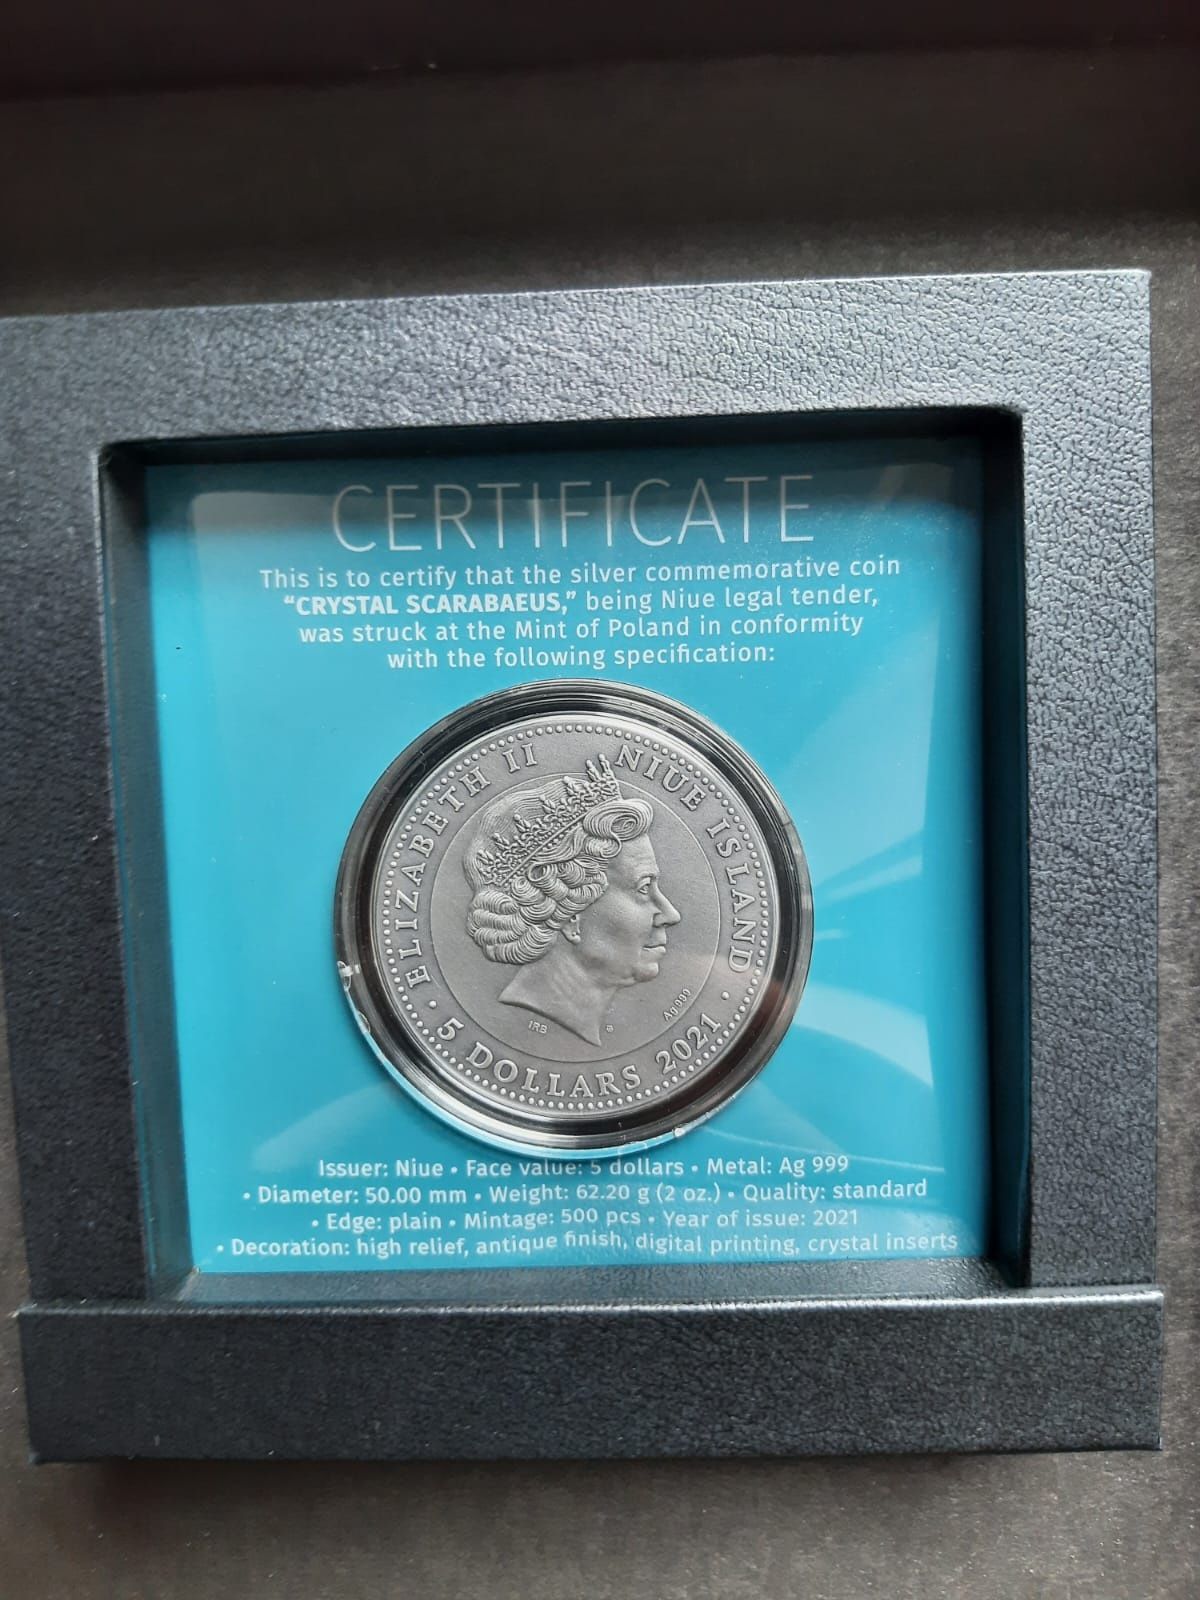 Skarabeusz Kryształowy 5$ moneta kolekcjonerska